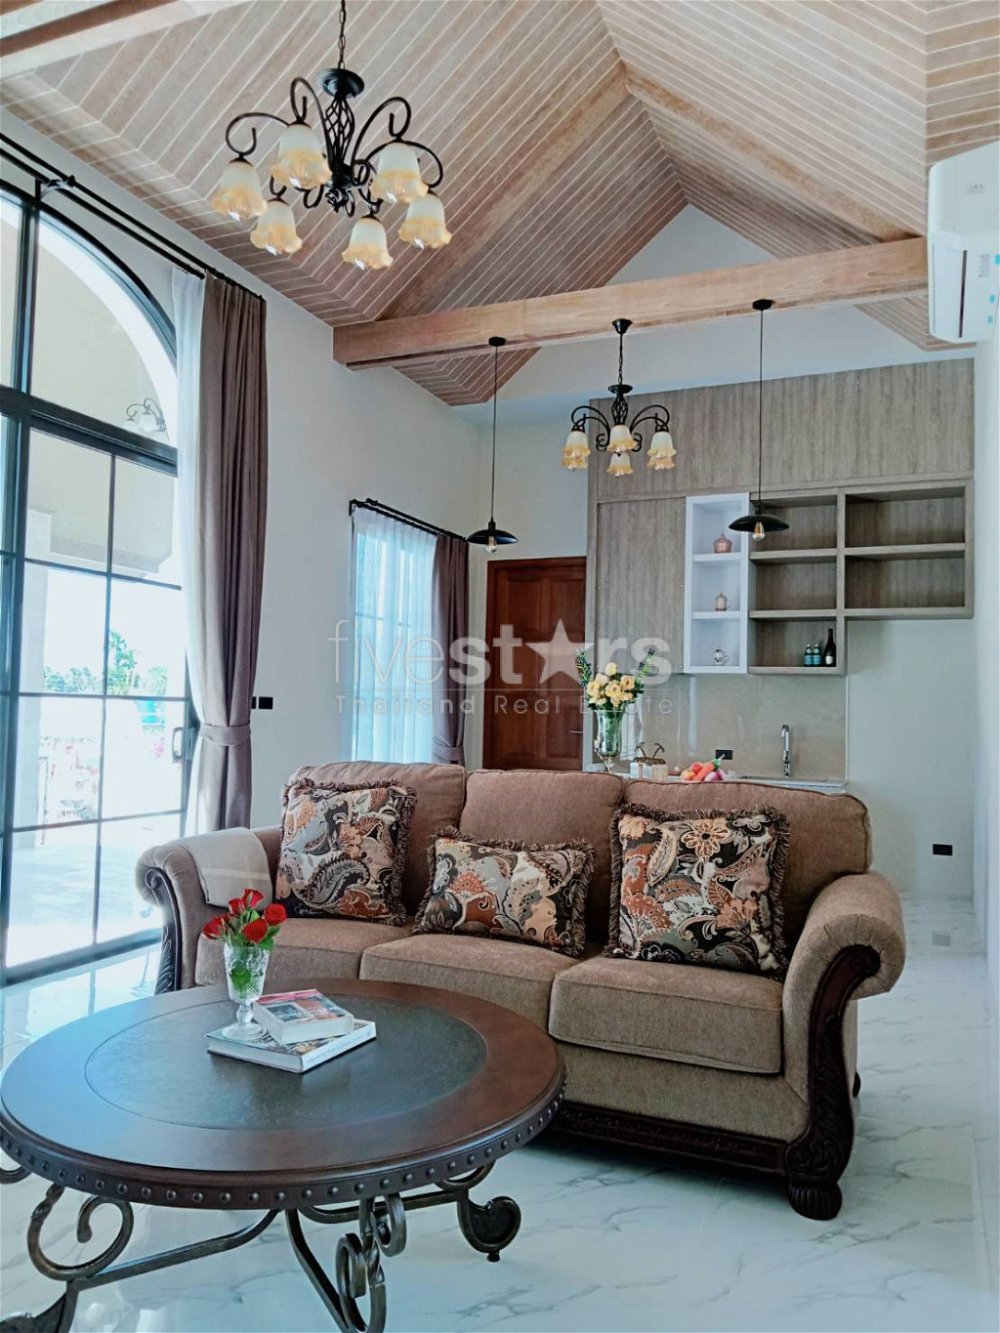 3 bedrooms villa for sale in koh Samui, Lamai area. 891797699